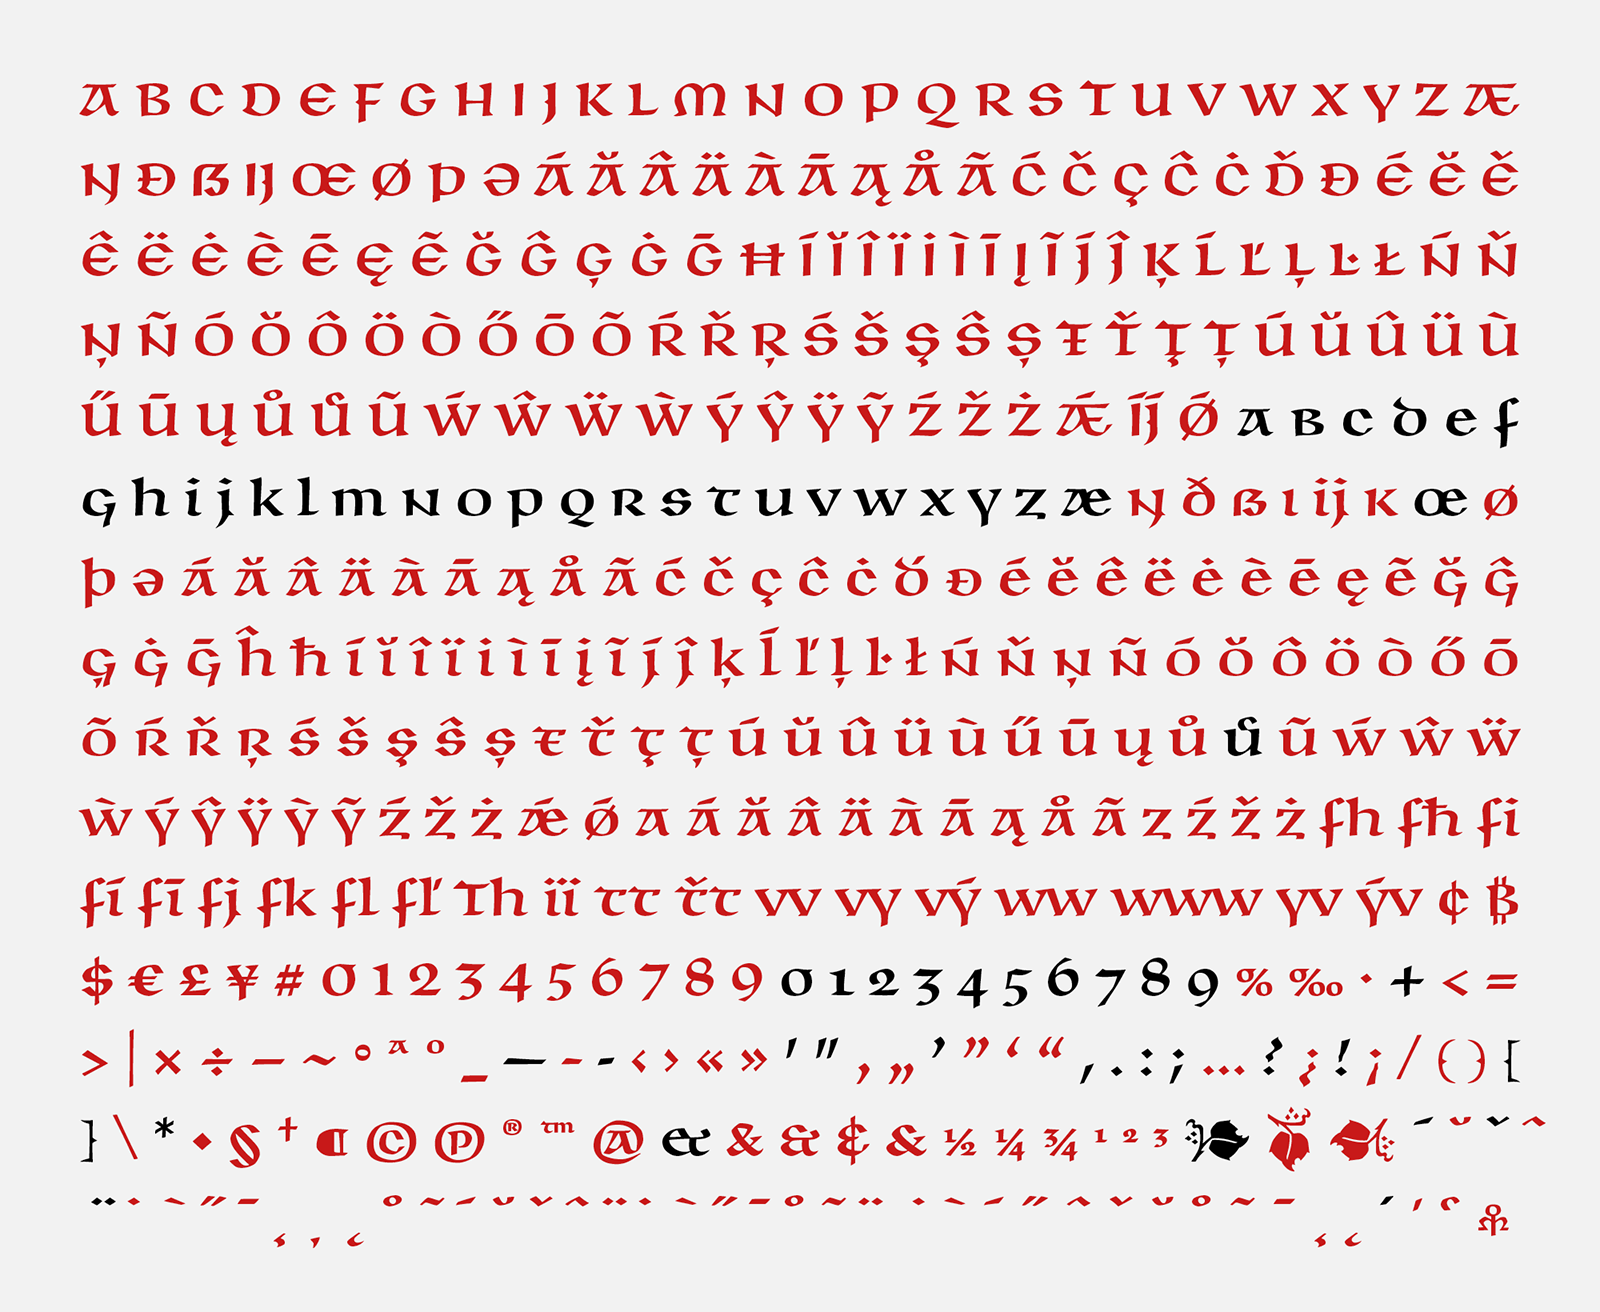 Kompletní znaková sada písma BC Unciála. Černě vyznačené jsou původní znaky, které navrhl Oldřich Menhart. Červené znaky jsou nově vzniklé.